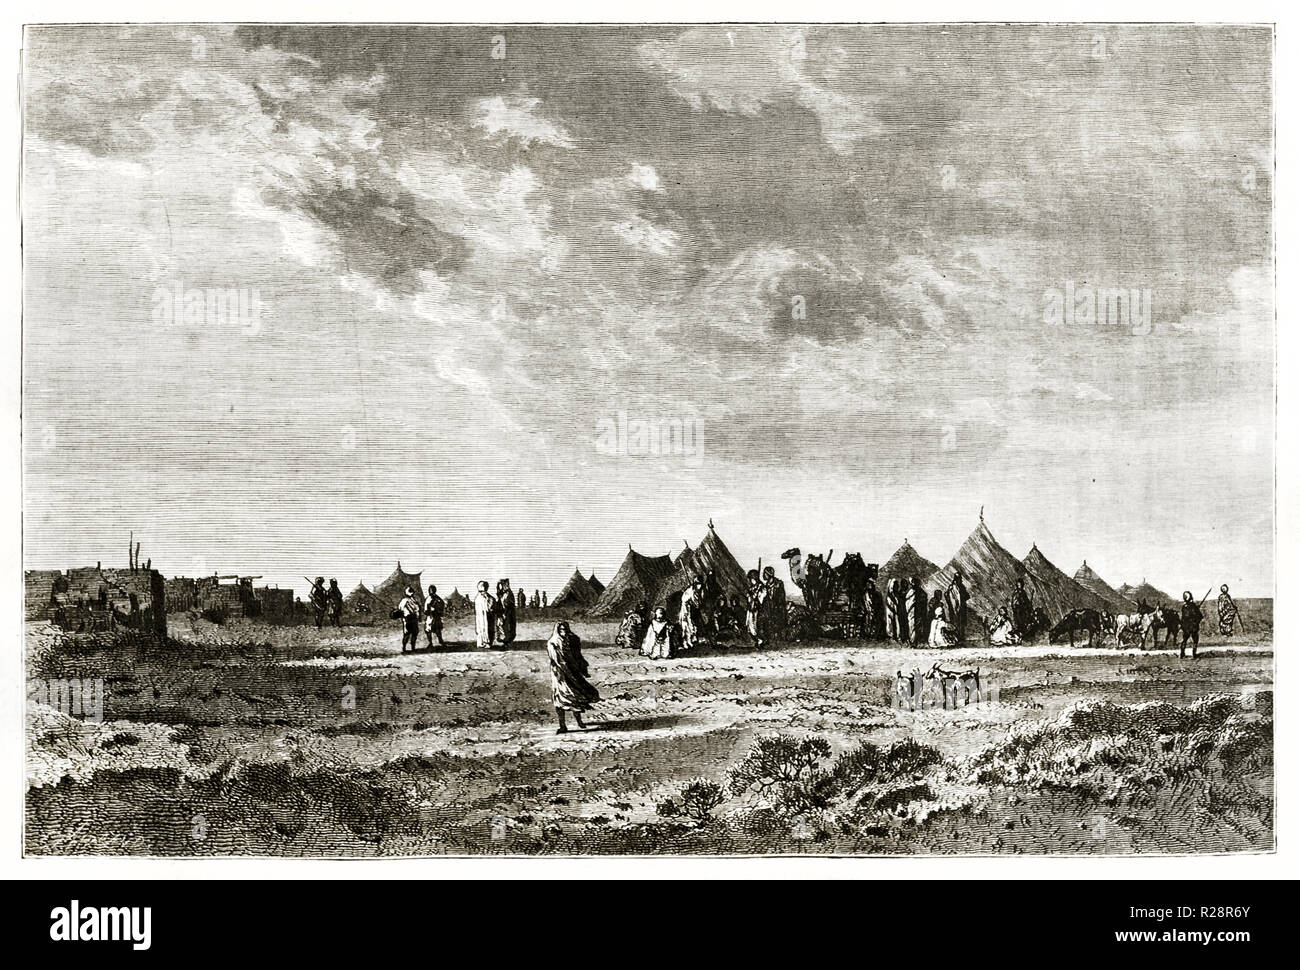 Old view of El Guisr encampment (Suez Canal excavation), Egypt. By Grenet, publ. on le Tour du Monde, Paris, 1863 Stock Photo